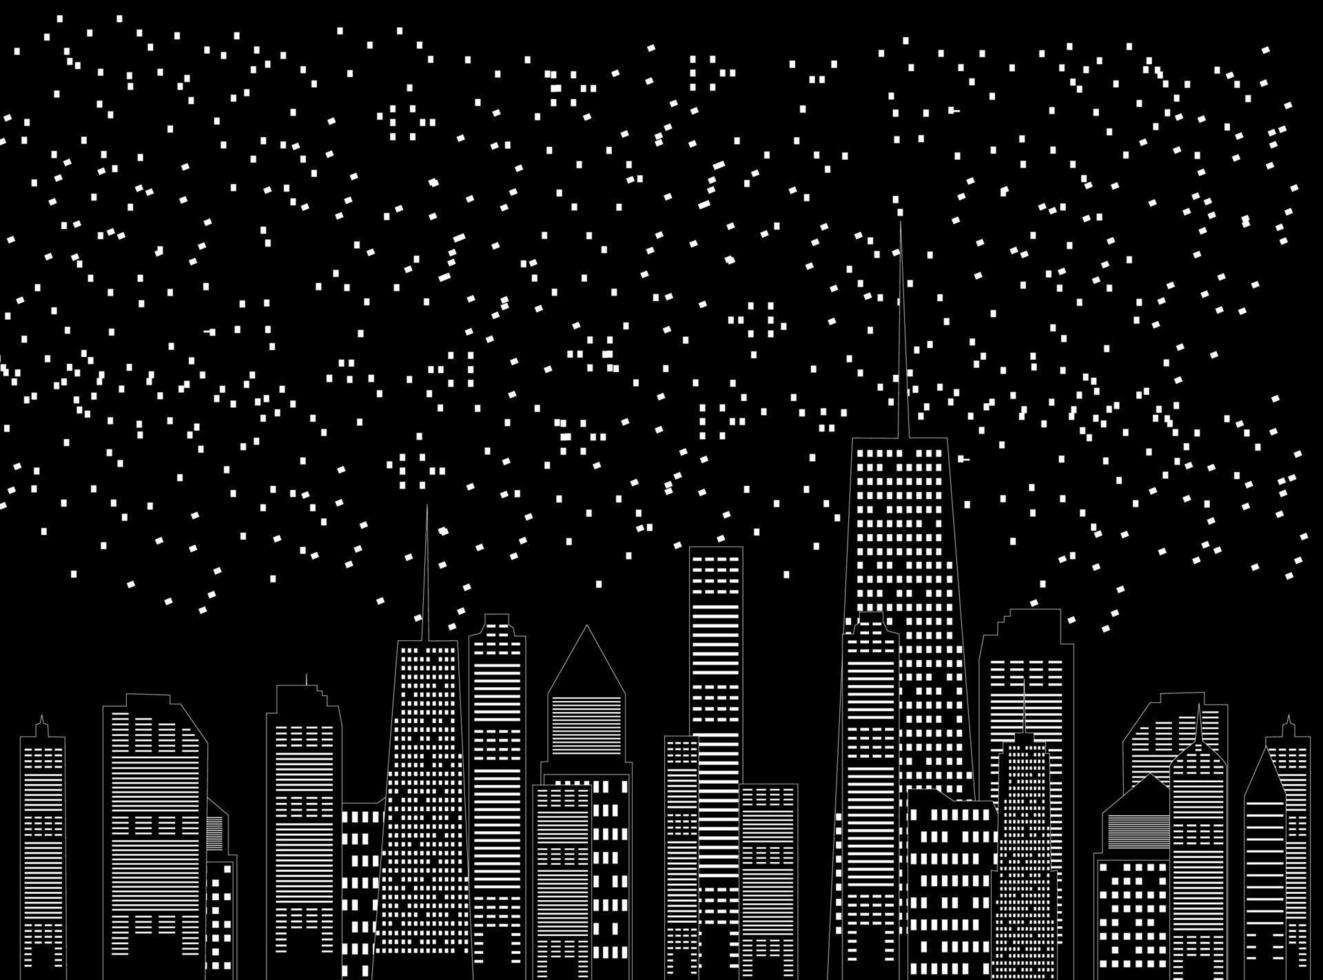 vektor illustration av städer siluett